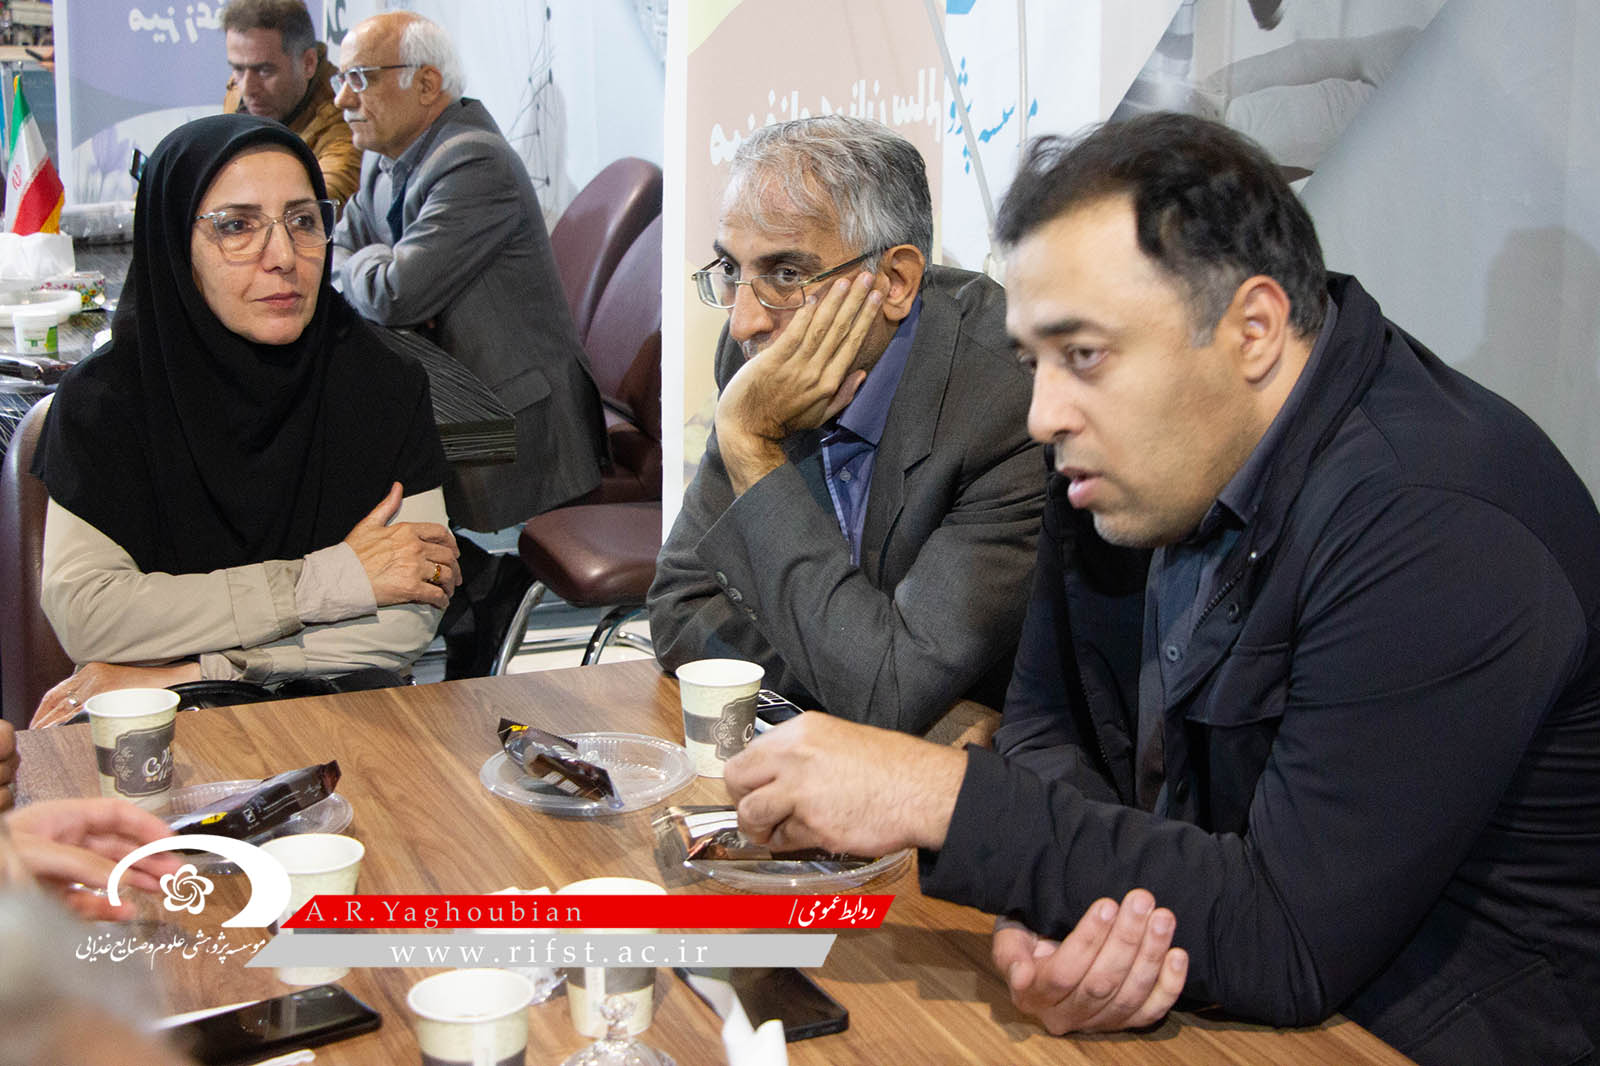 بیست و چهارمین نمایشگاه هفته پژوهش و فناوری با حضور موسسه پژوهشی علوم و صنایع غذایی در مشهد افتتاح شد.